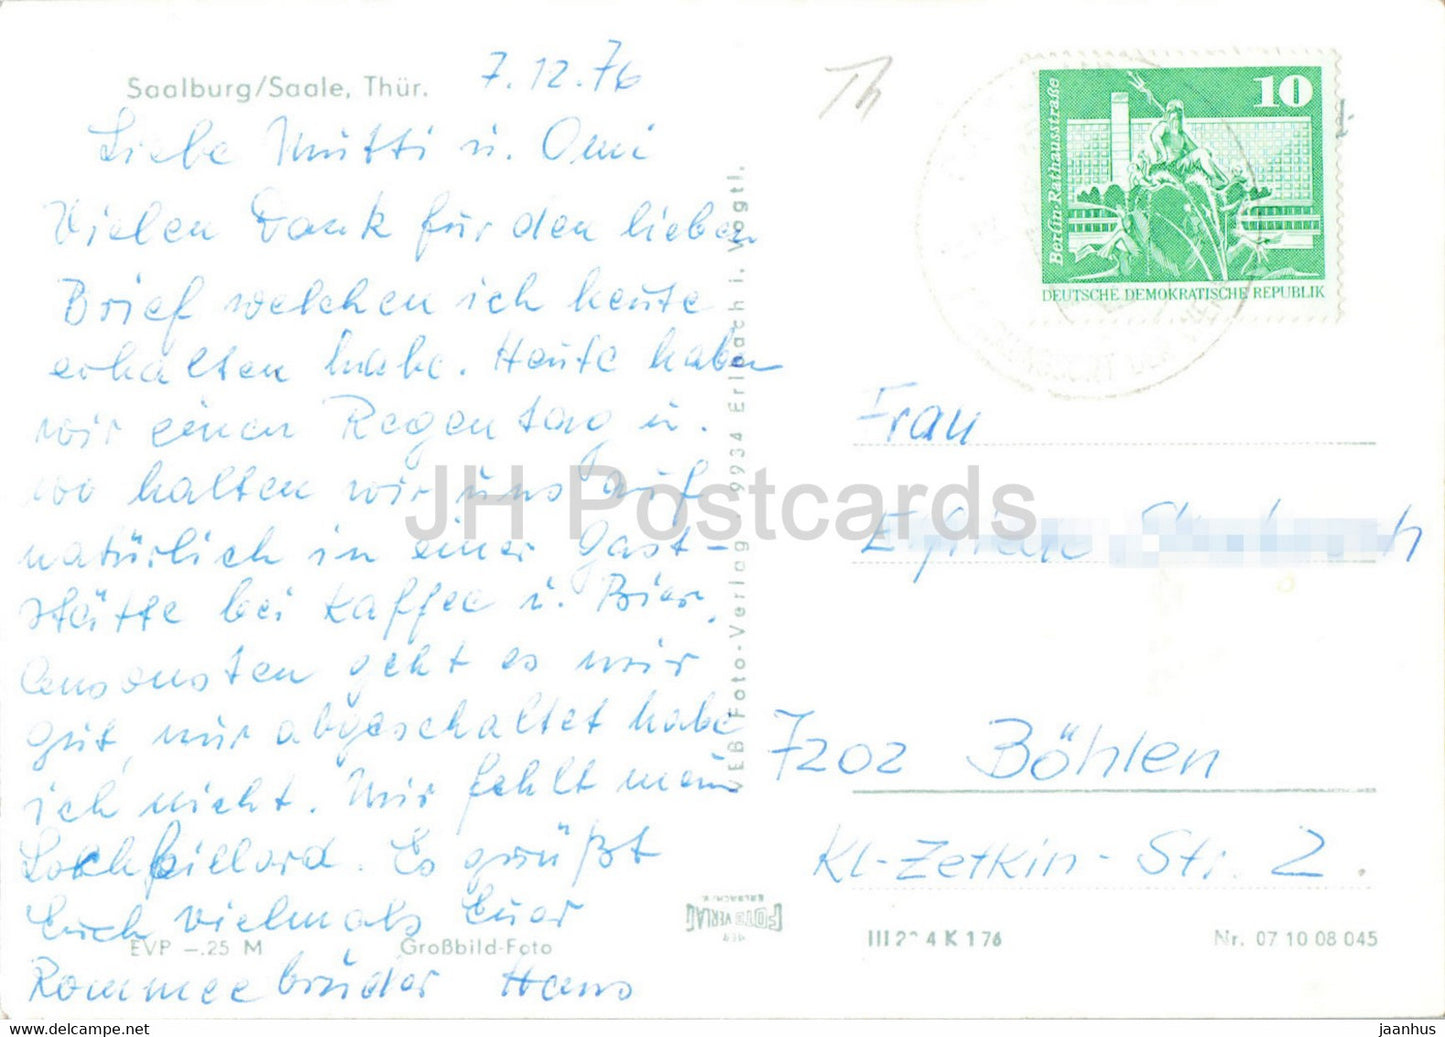 Saalburg - Saale - bridge - old postcard - 1976 - Germany DDR - used